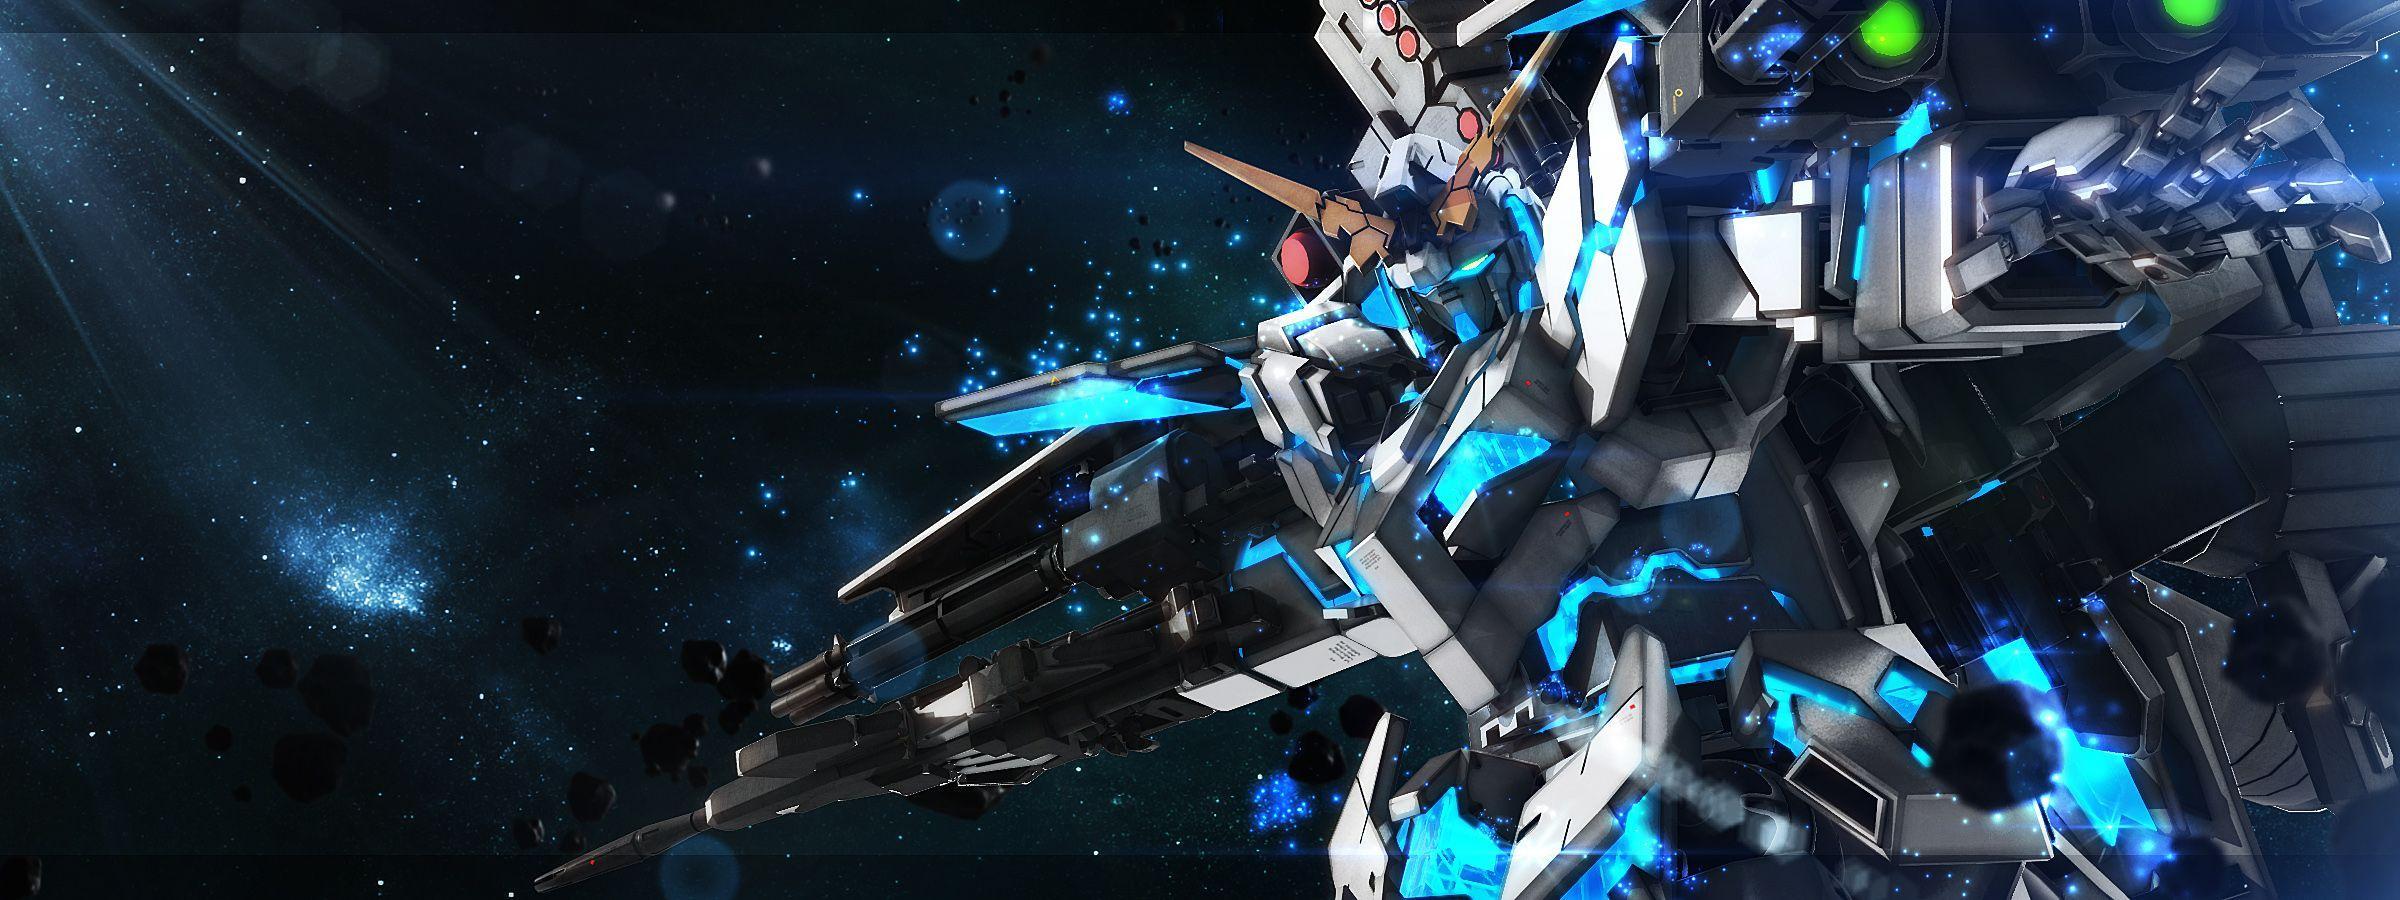 2400x900 hình nền Gundam